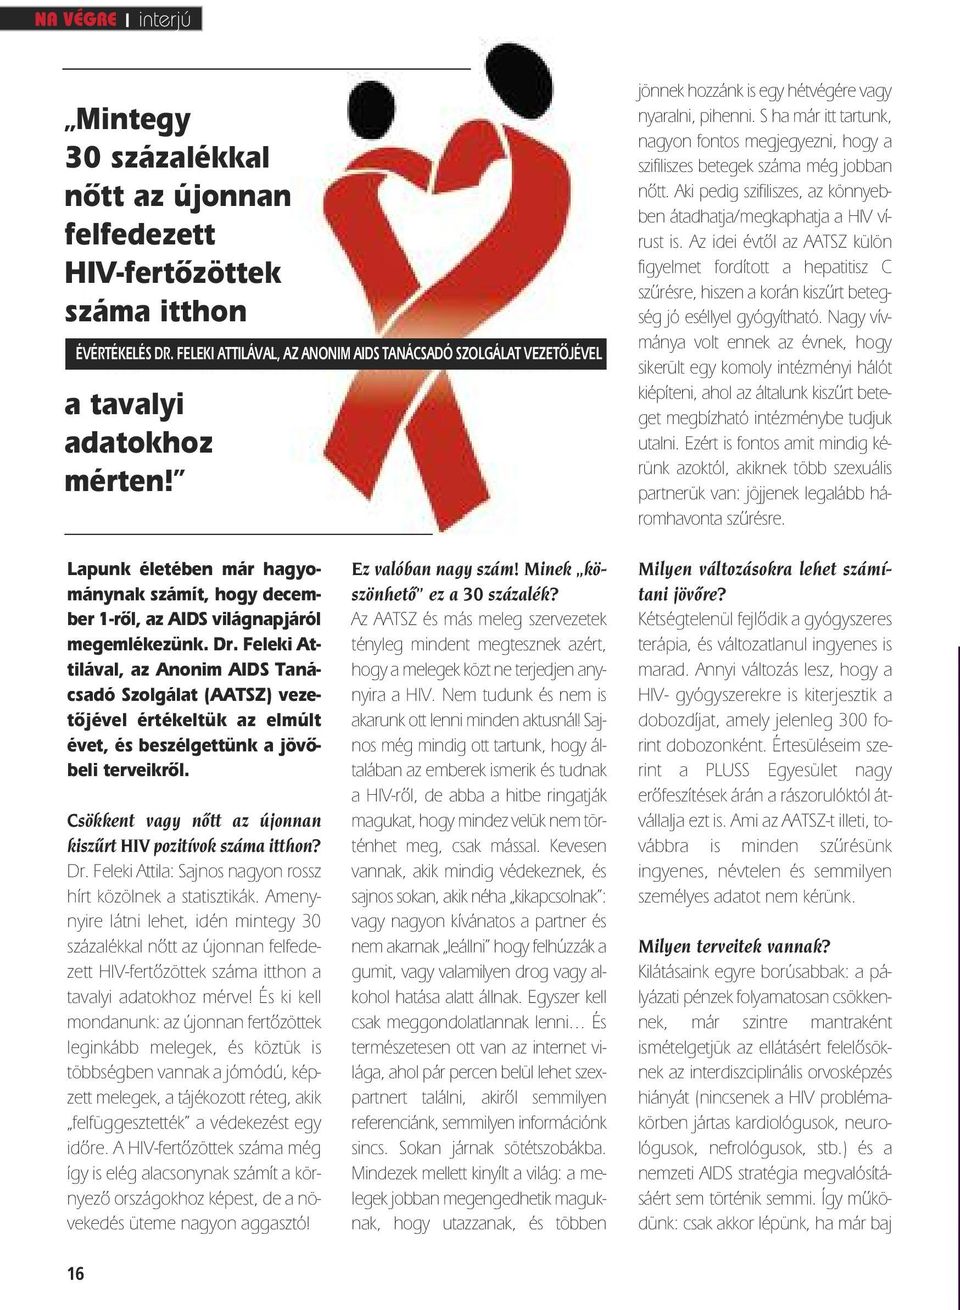 Infektológus: Magyarországon nem nőtt ugrásszerűen a HIV-pozitív betegek száma